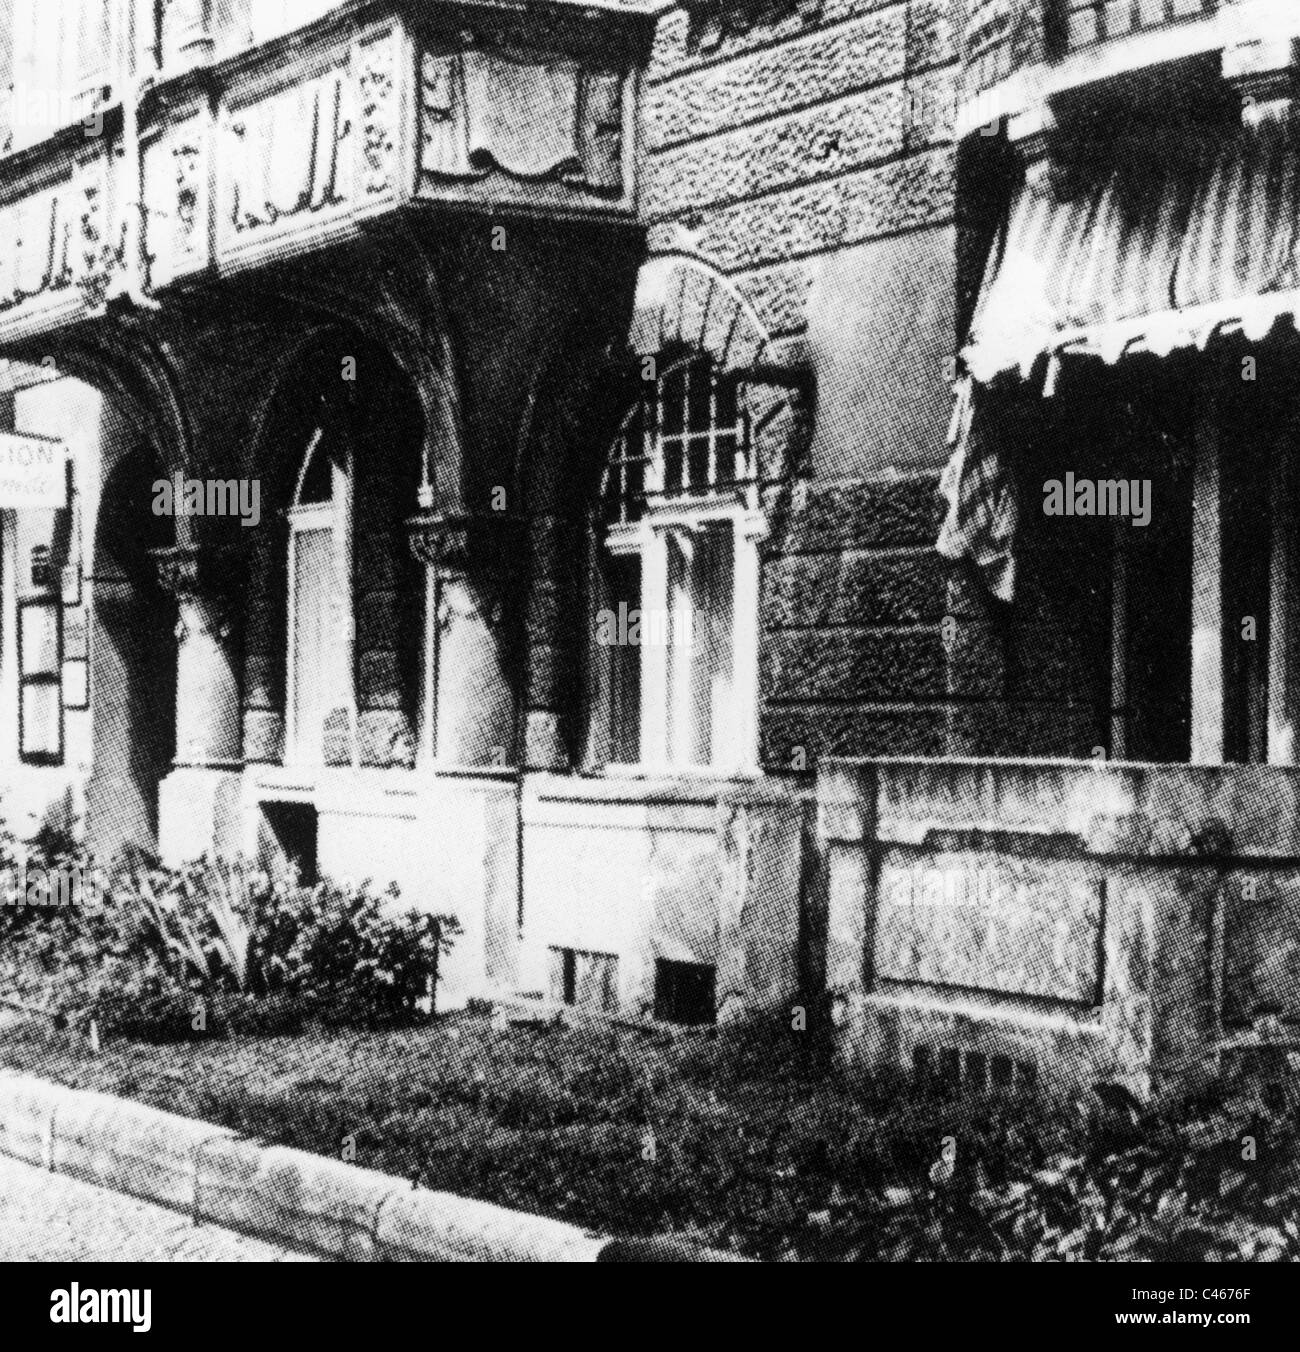 Nazi Germany: Gestapo and Sicherheitsdienst, Reichskriminalpolizeiamt in Berlin, 1933-1945 Stock Photo